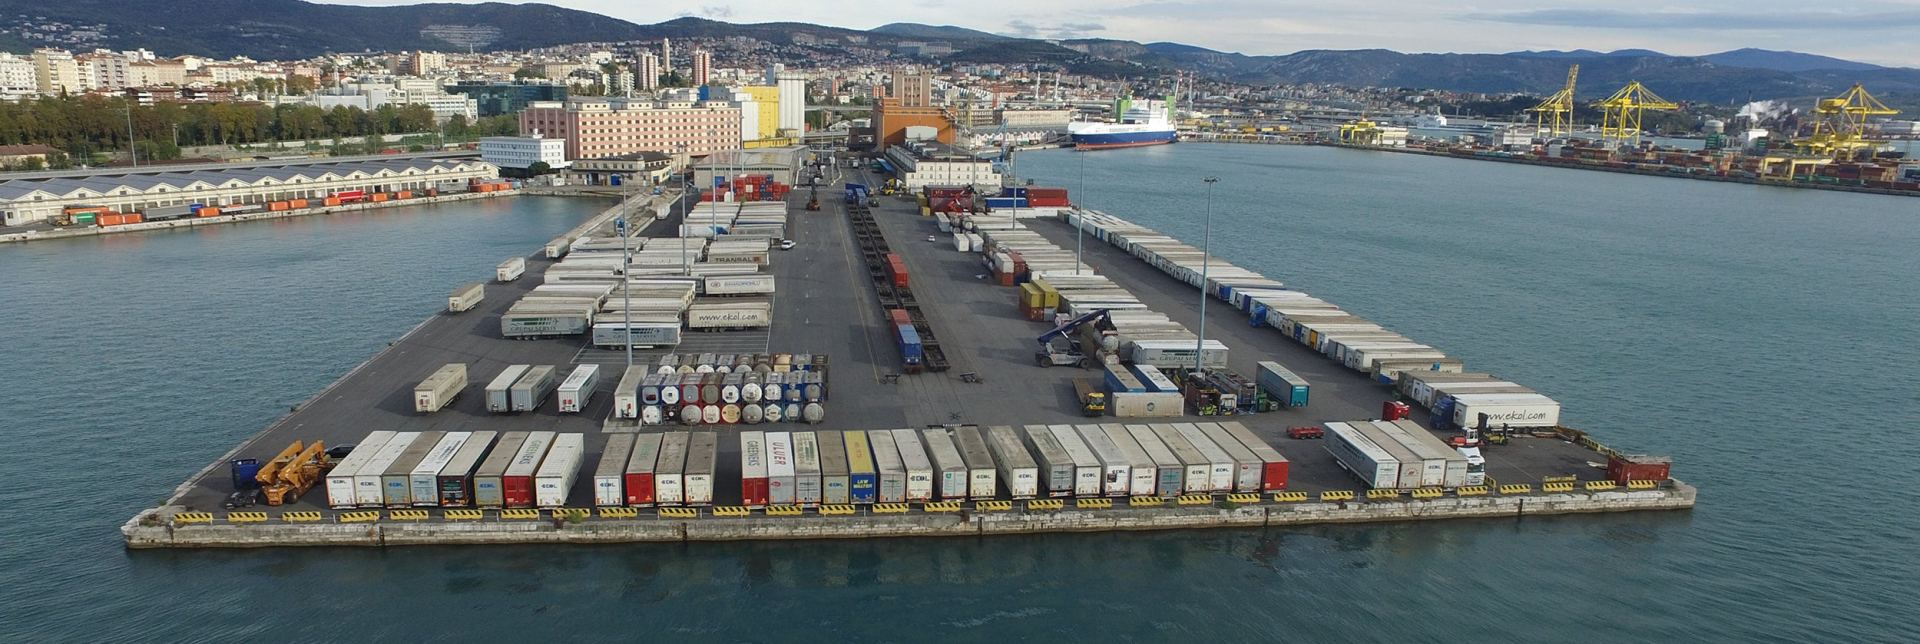 Обнародованы перевозки автомобилей между турецким портом Ялова и итальянским Бари